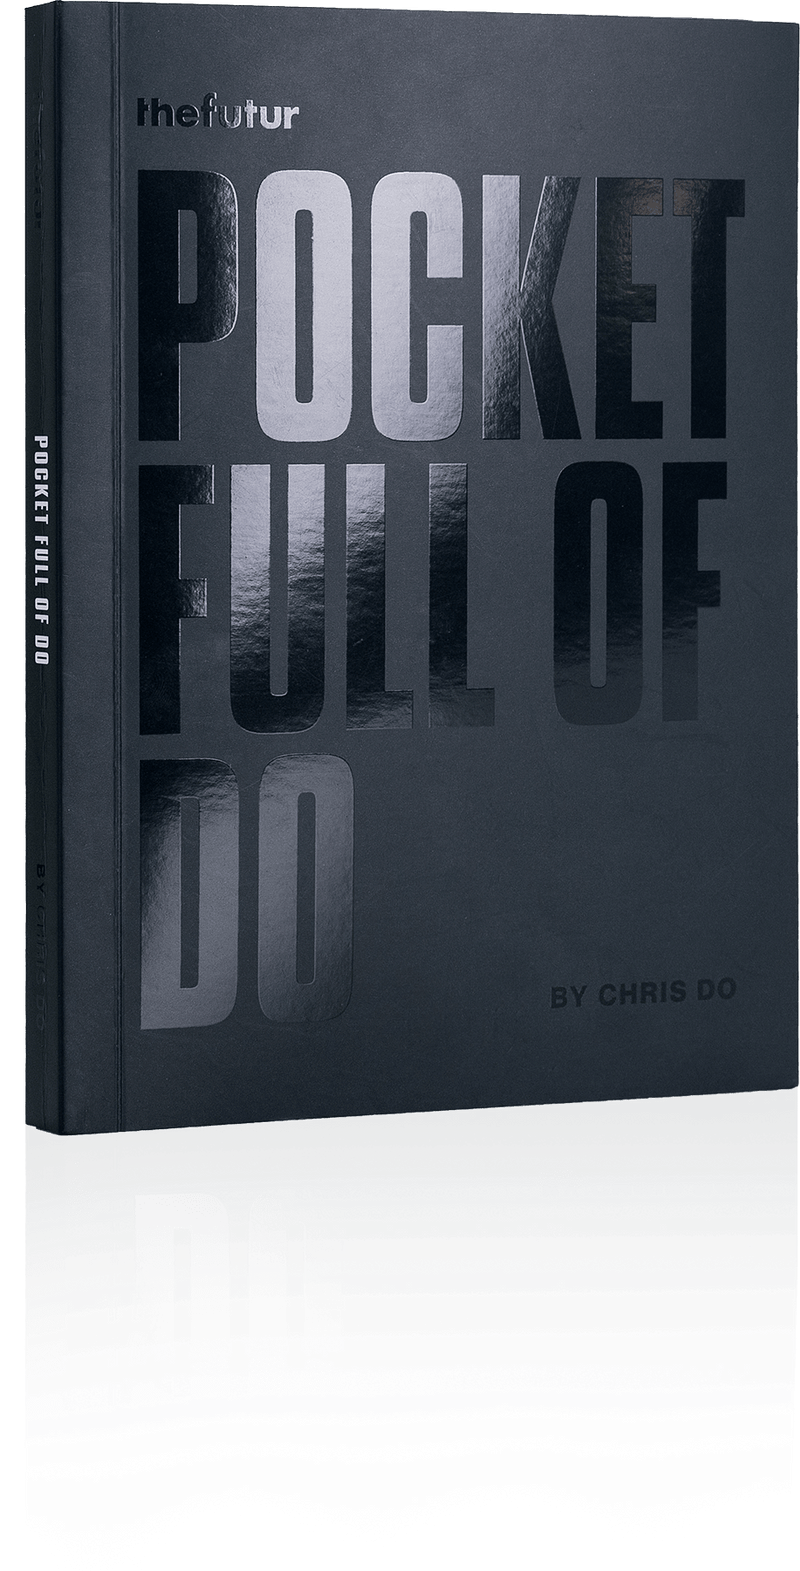 Chris Do (thefutur.com) - Pocket Full of Do Download